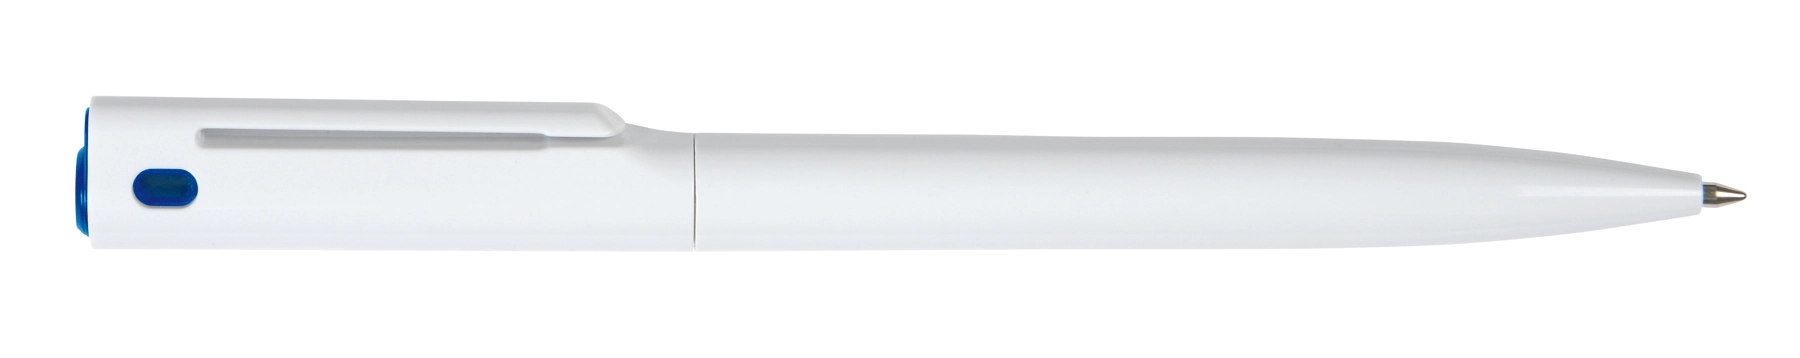 Długopis VERMONT, biały, niebieski 56-1102117 biały